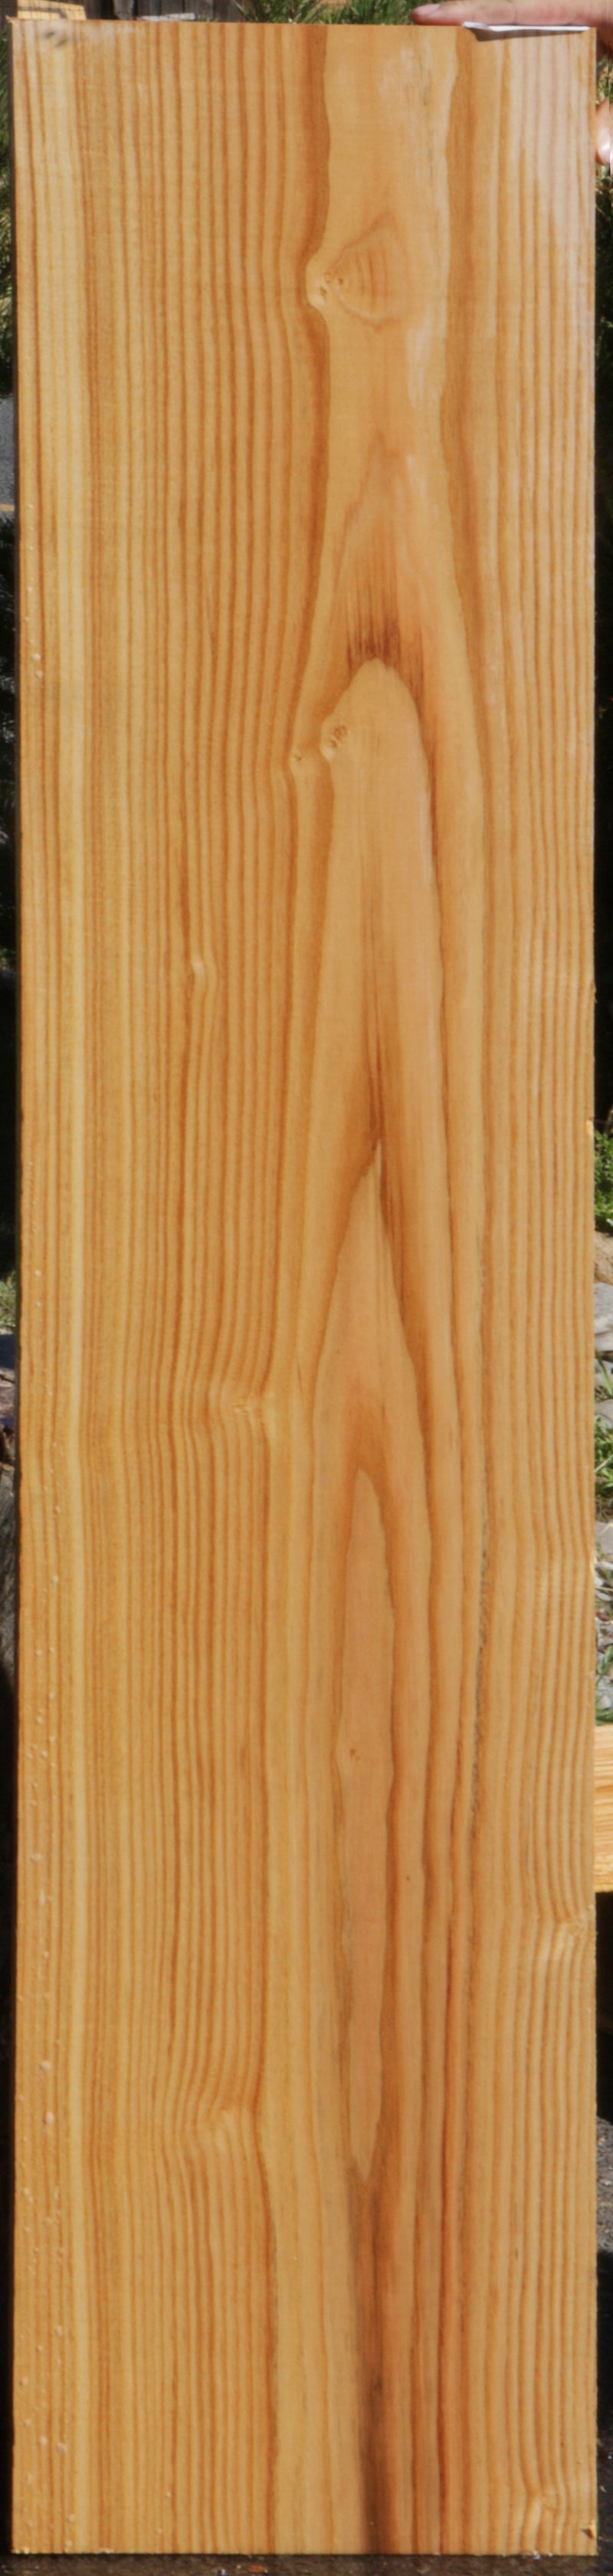 Kentucky Coffeetree Lumber